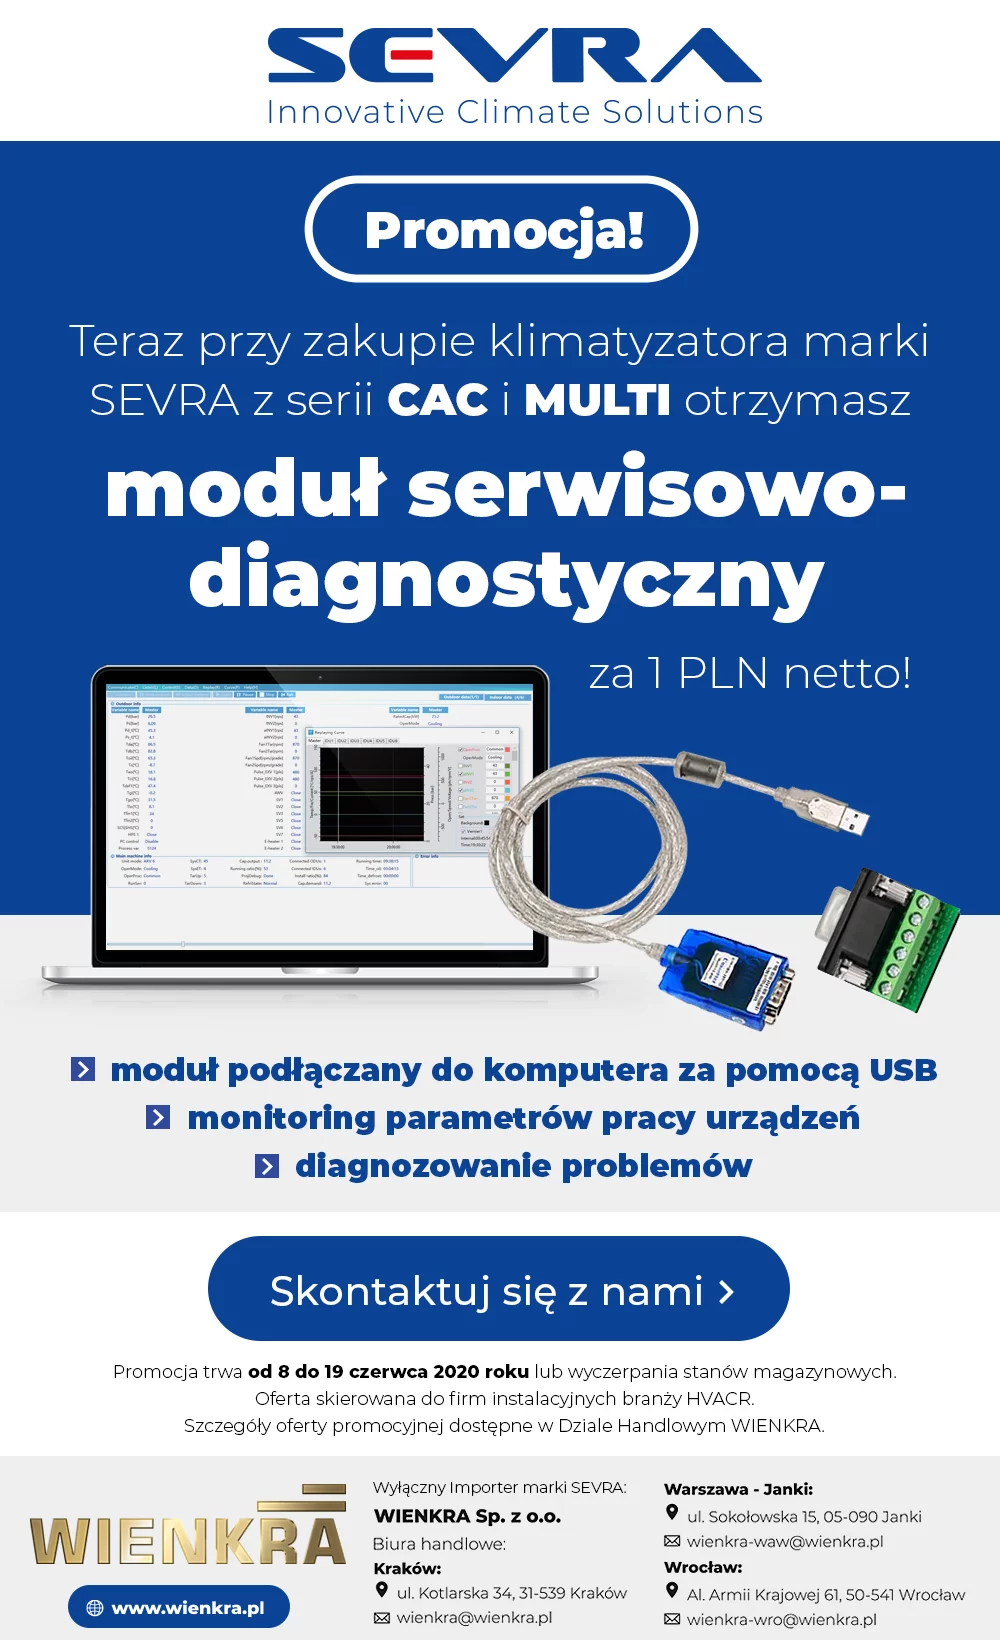 Promocja! Teraz przy zakupie klimatyzatora marki SERVA z serii CAC i MULTI otrzymasz moduł serwisowo-diagnostyczny za 1 PLN netto!